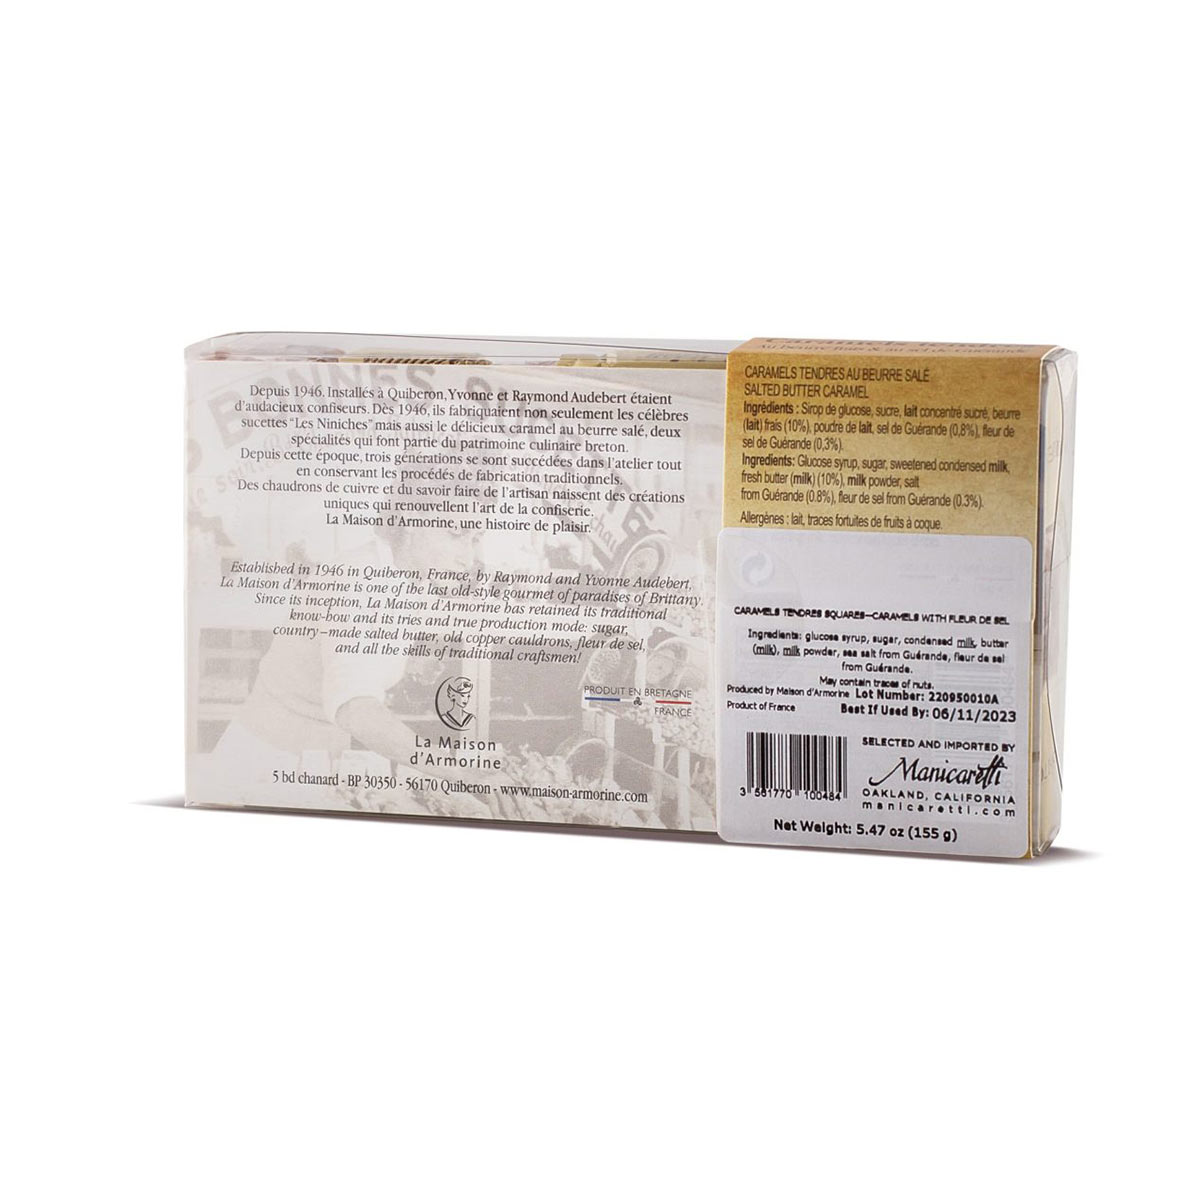 ⇒ Caramels bretons au beurre frais & Fleur de sel de Guérande - Bretagne